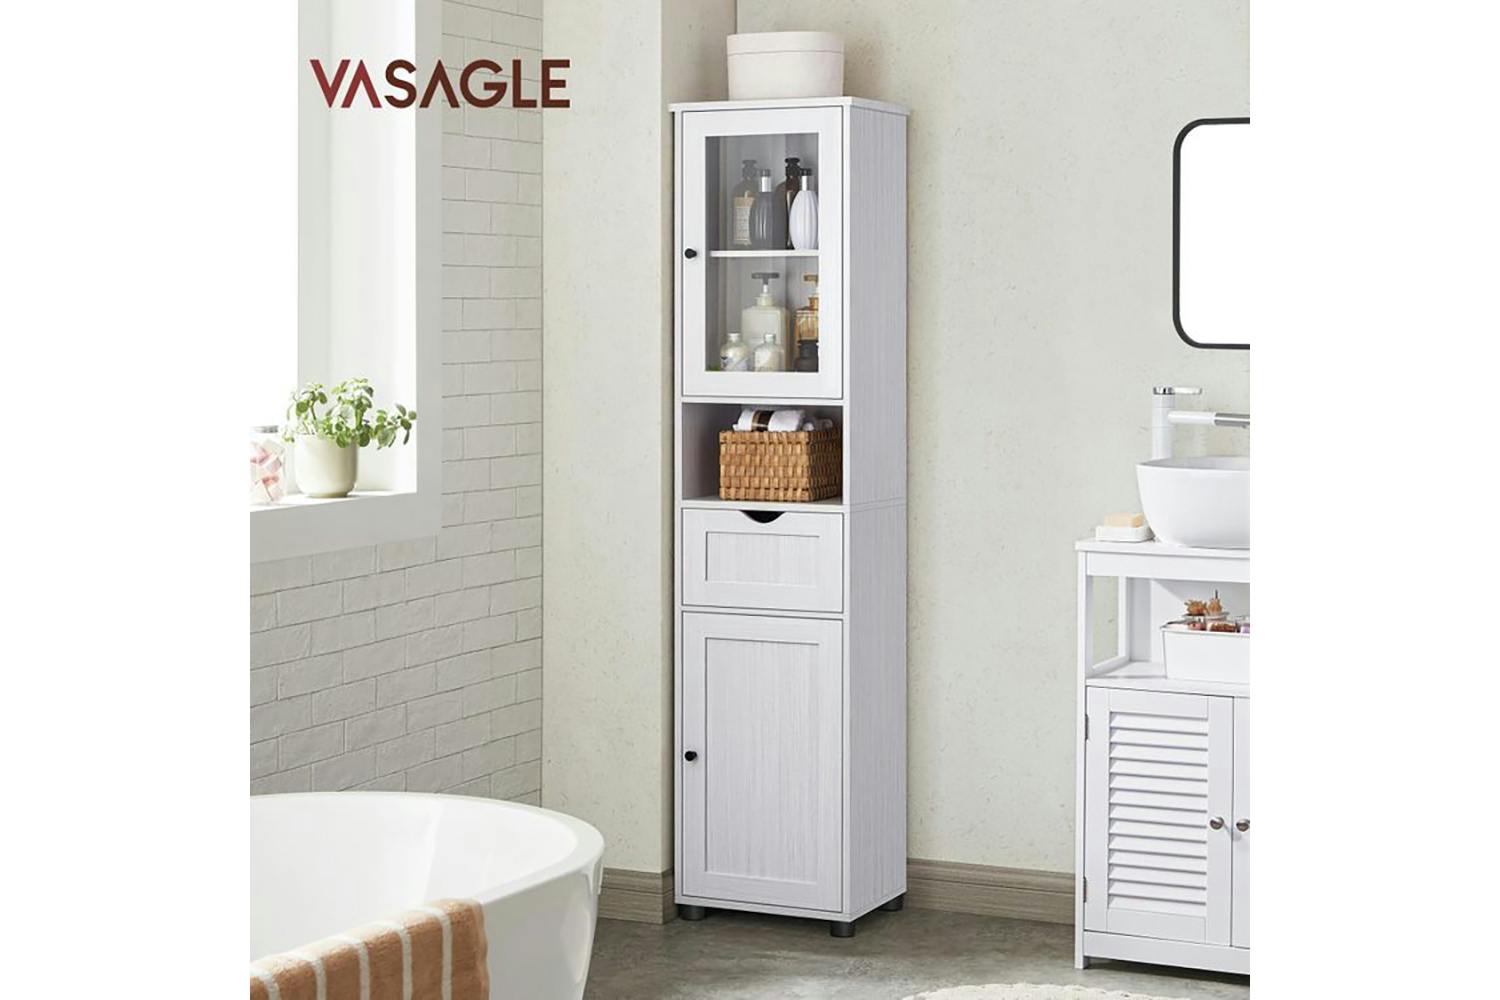 Vasagle BBK163T44 Bathroom Cabinet with Height-Adjustable Shelves | White